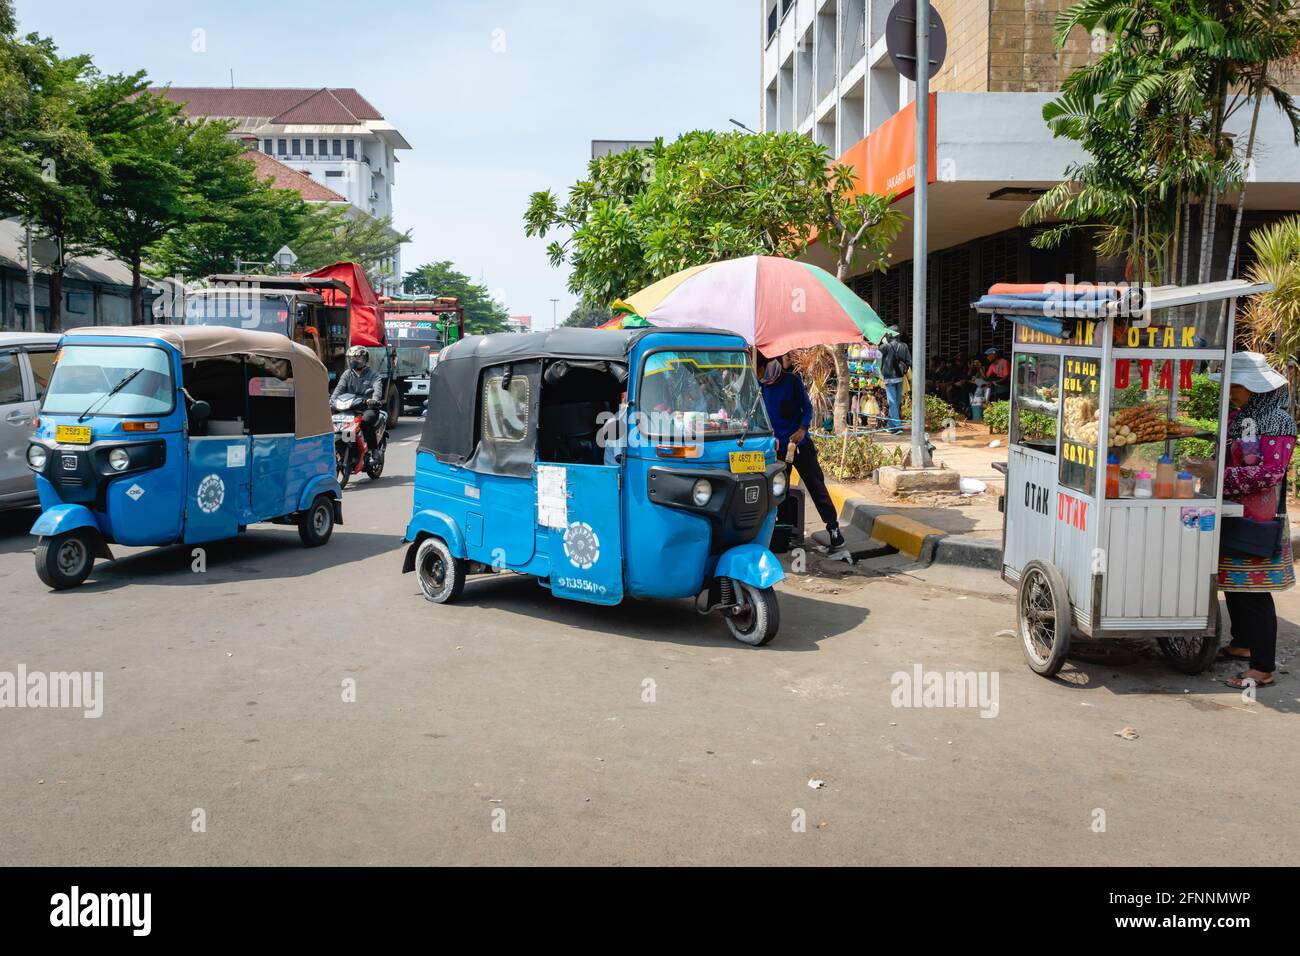 Jakarta, Indonesien - 2017. November: Tuk Tuk, motorisierte Rikscha, in der Innenstadt von Jakarta. Rikscha ist eine gängige Form des öffentlichen Verkehrs in Südostasien Stockfoto